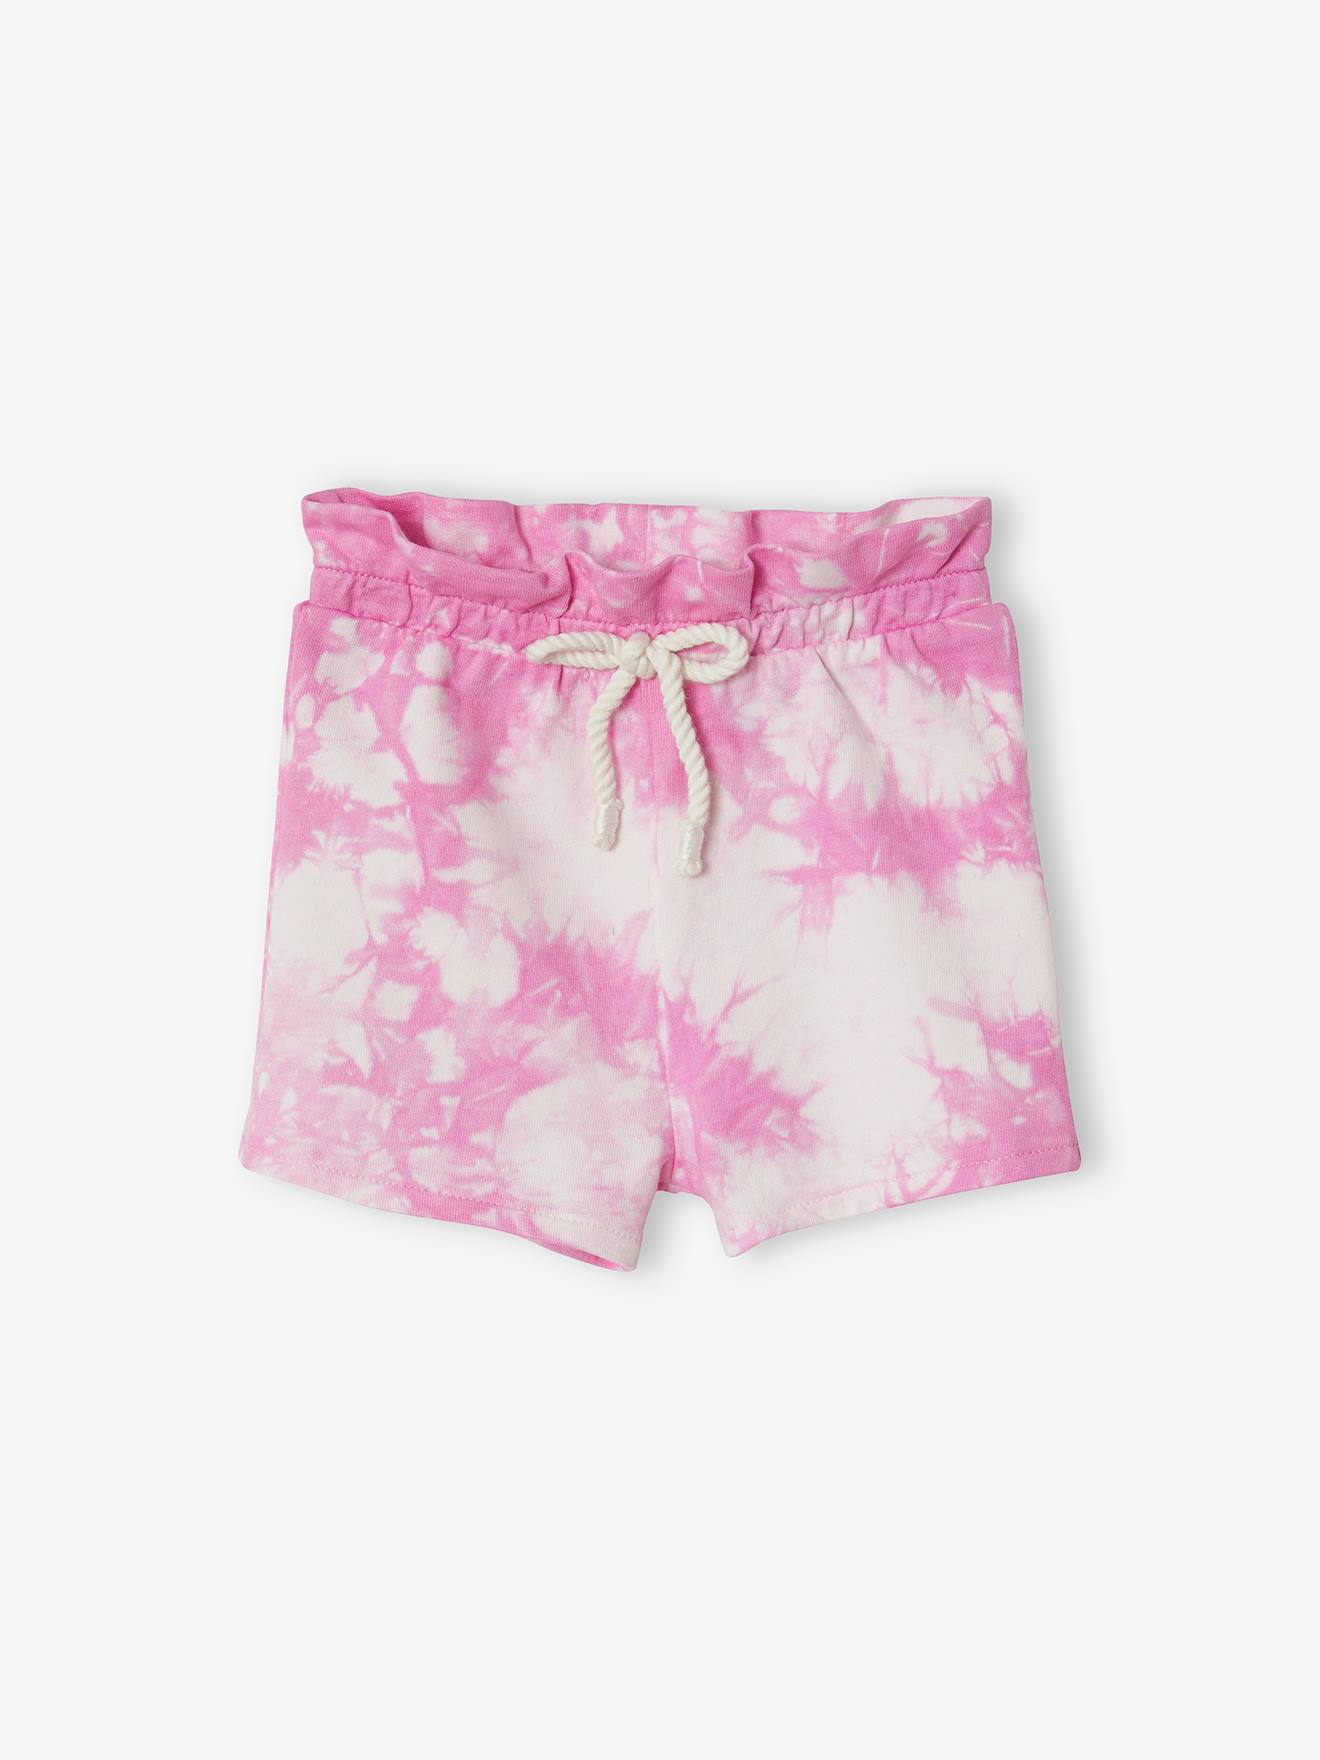 Tie-Dye Fleece Shorts for Babies - pink medium solid, Baby | Vertbaudet